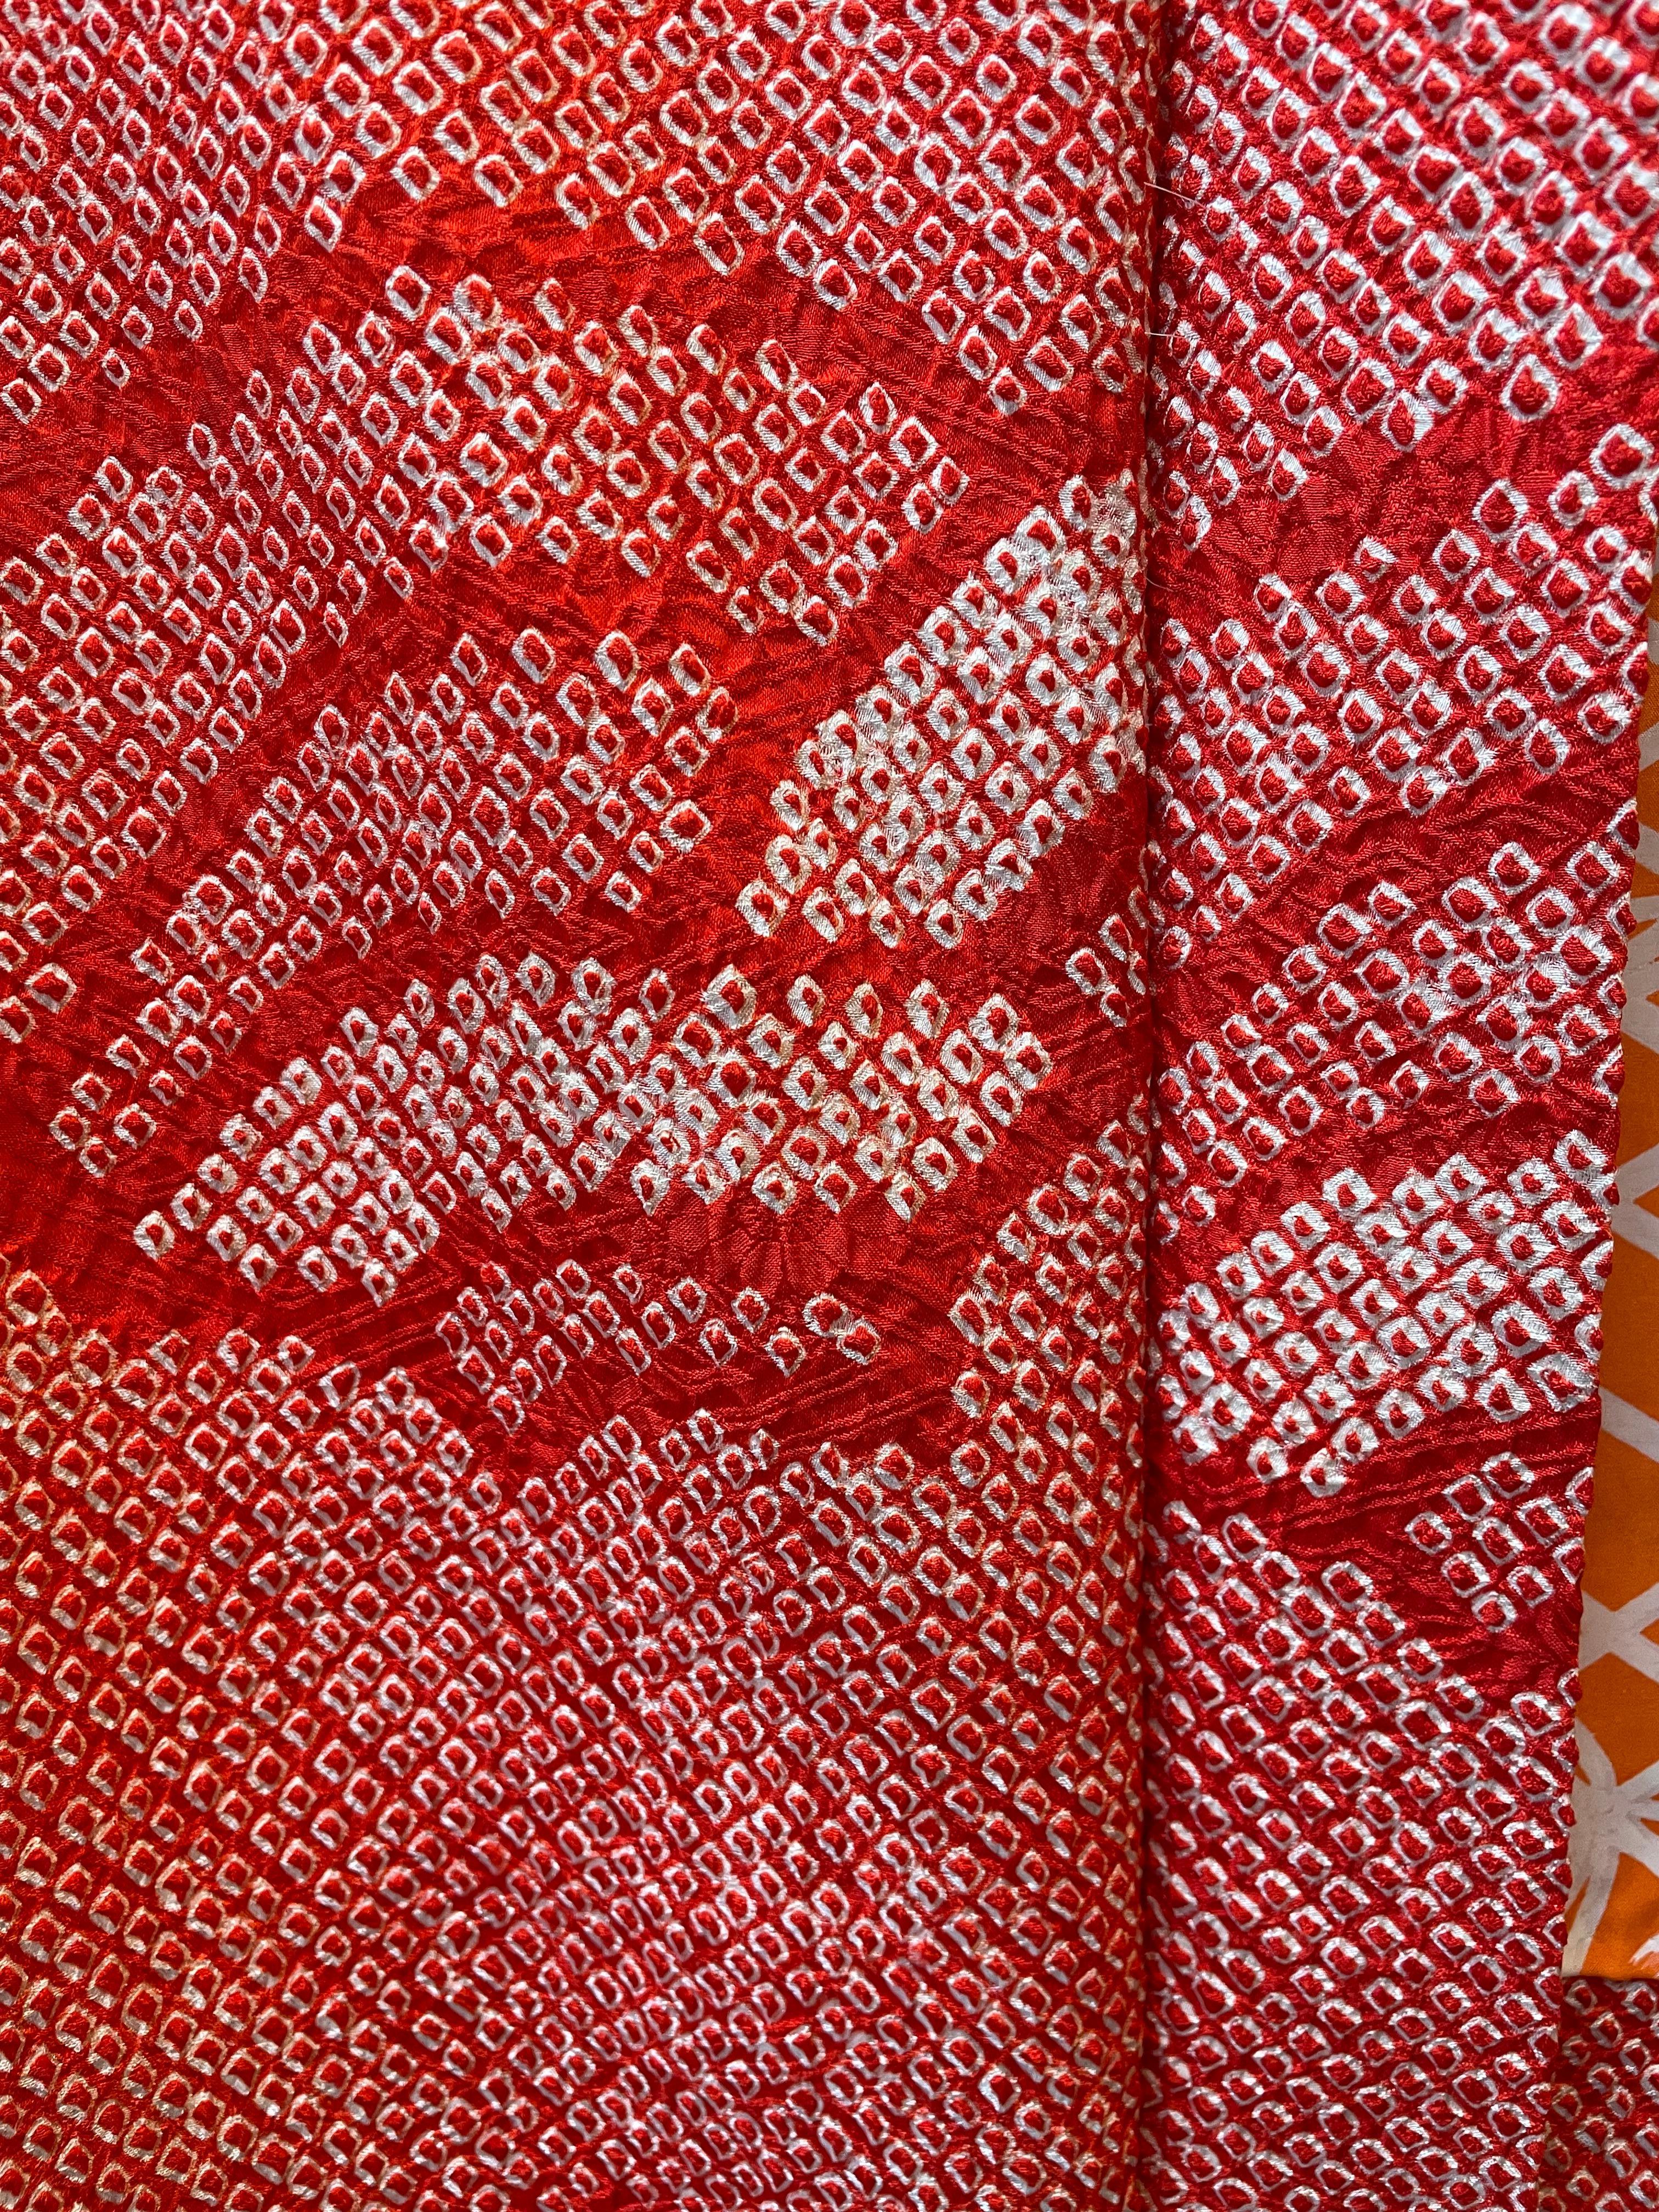 Dies ist eine Seidenjacke, die in Japan hergestellt wurde.
Es wurde in der Showa-Ära in den 1970er Jahren hergestellt. Diese Jacke ist in Shibori-Technik gefertigt.

Shibori ist eine japanische, manuelle Färbetechnik, die eine Reihe verschiedener